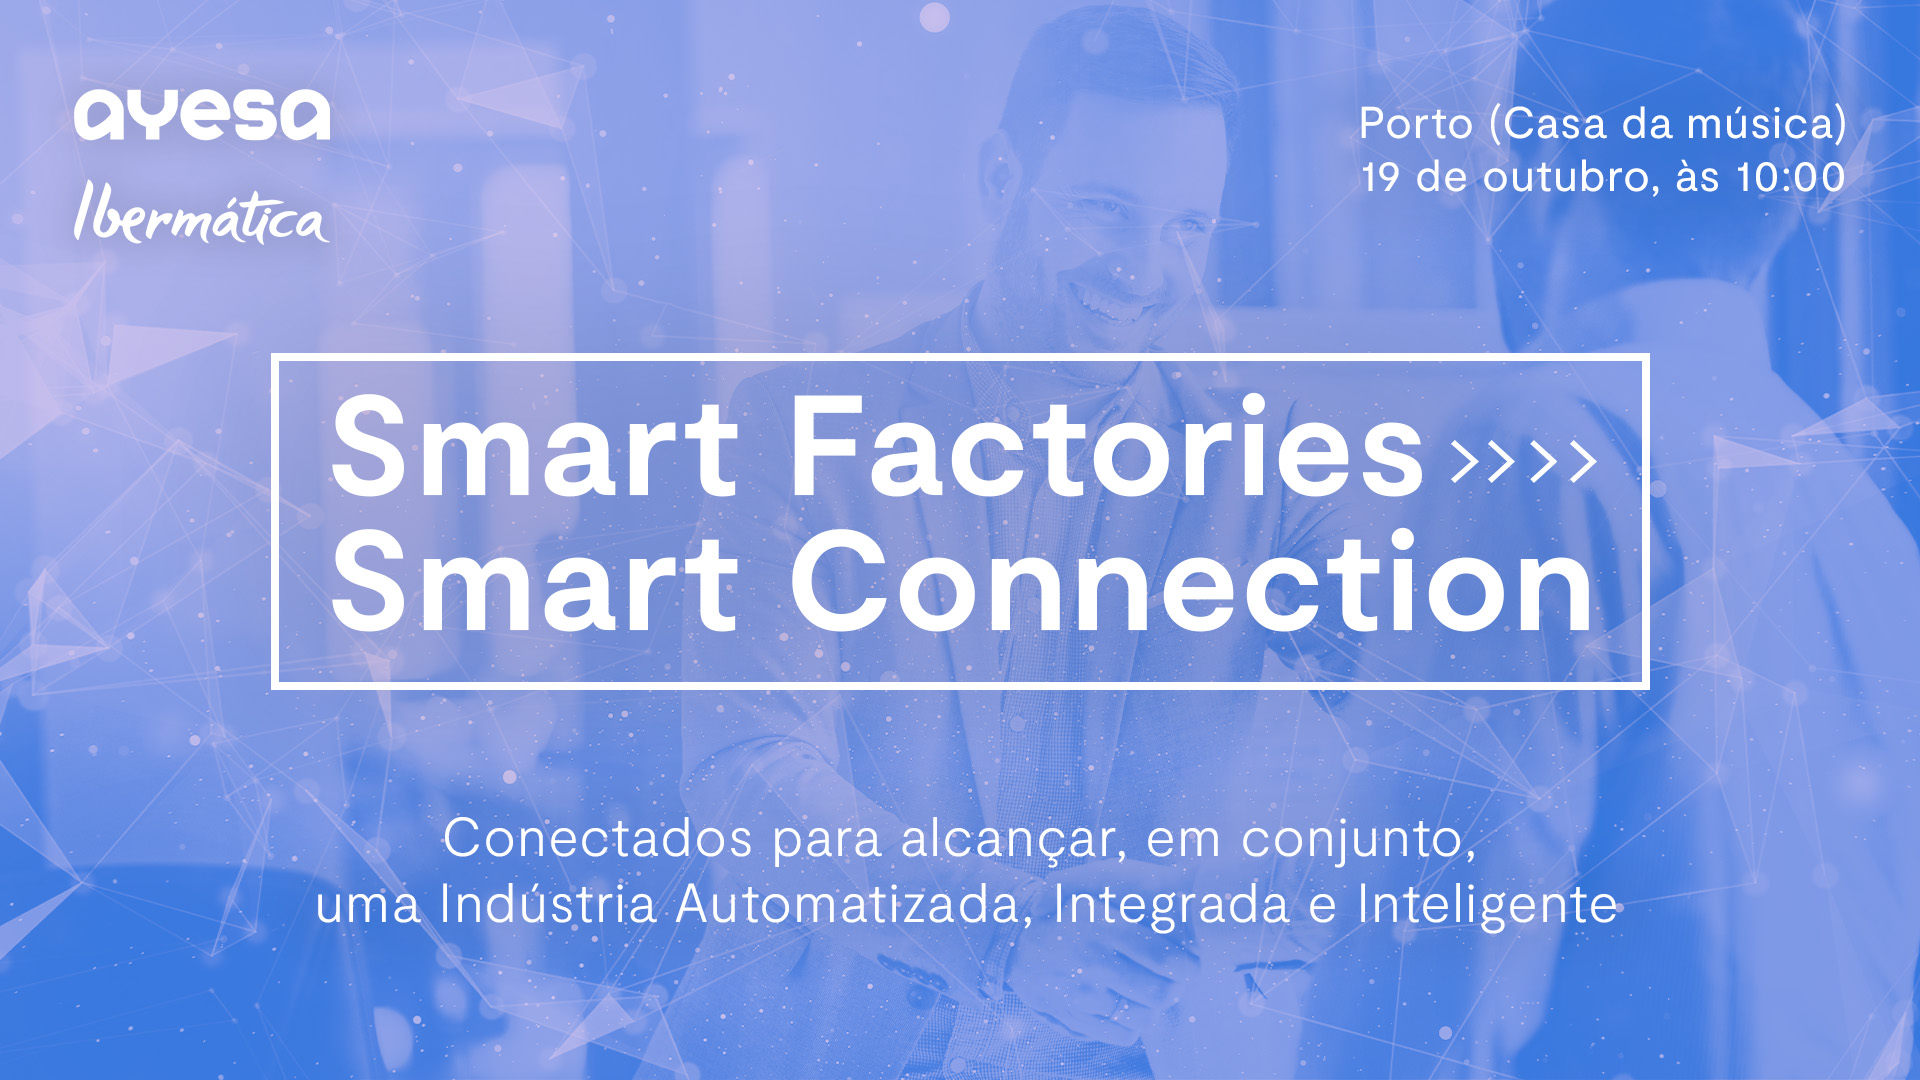 Evento “Smart Factories ></noscript>> Smart Connection” | Porto. 19 outubro